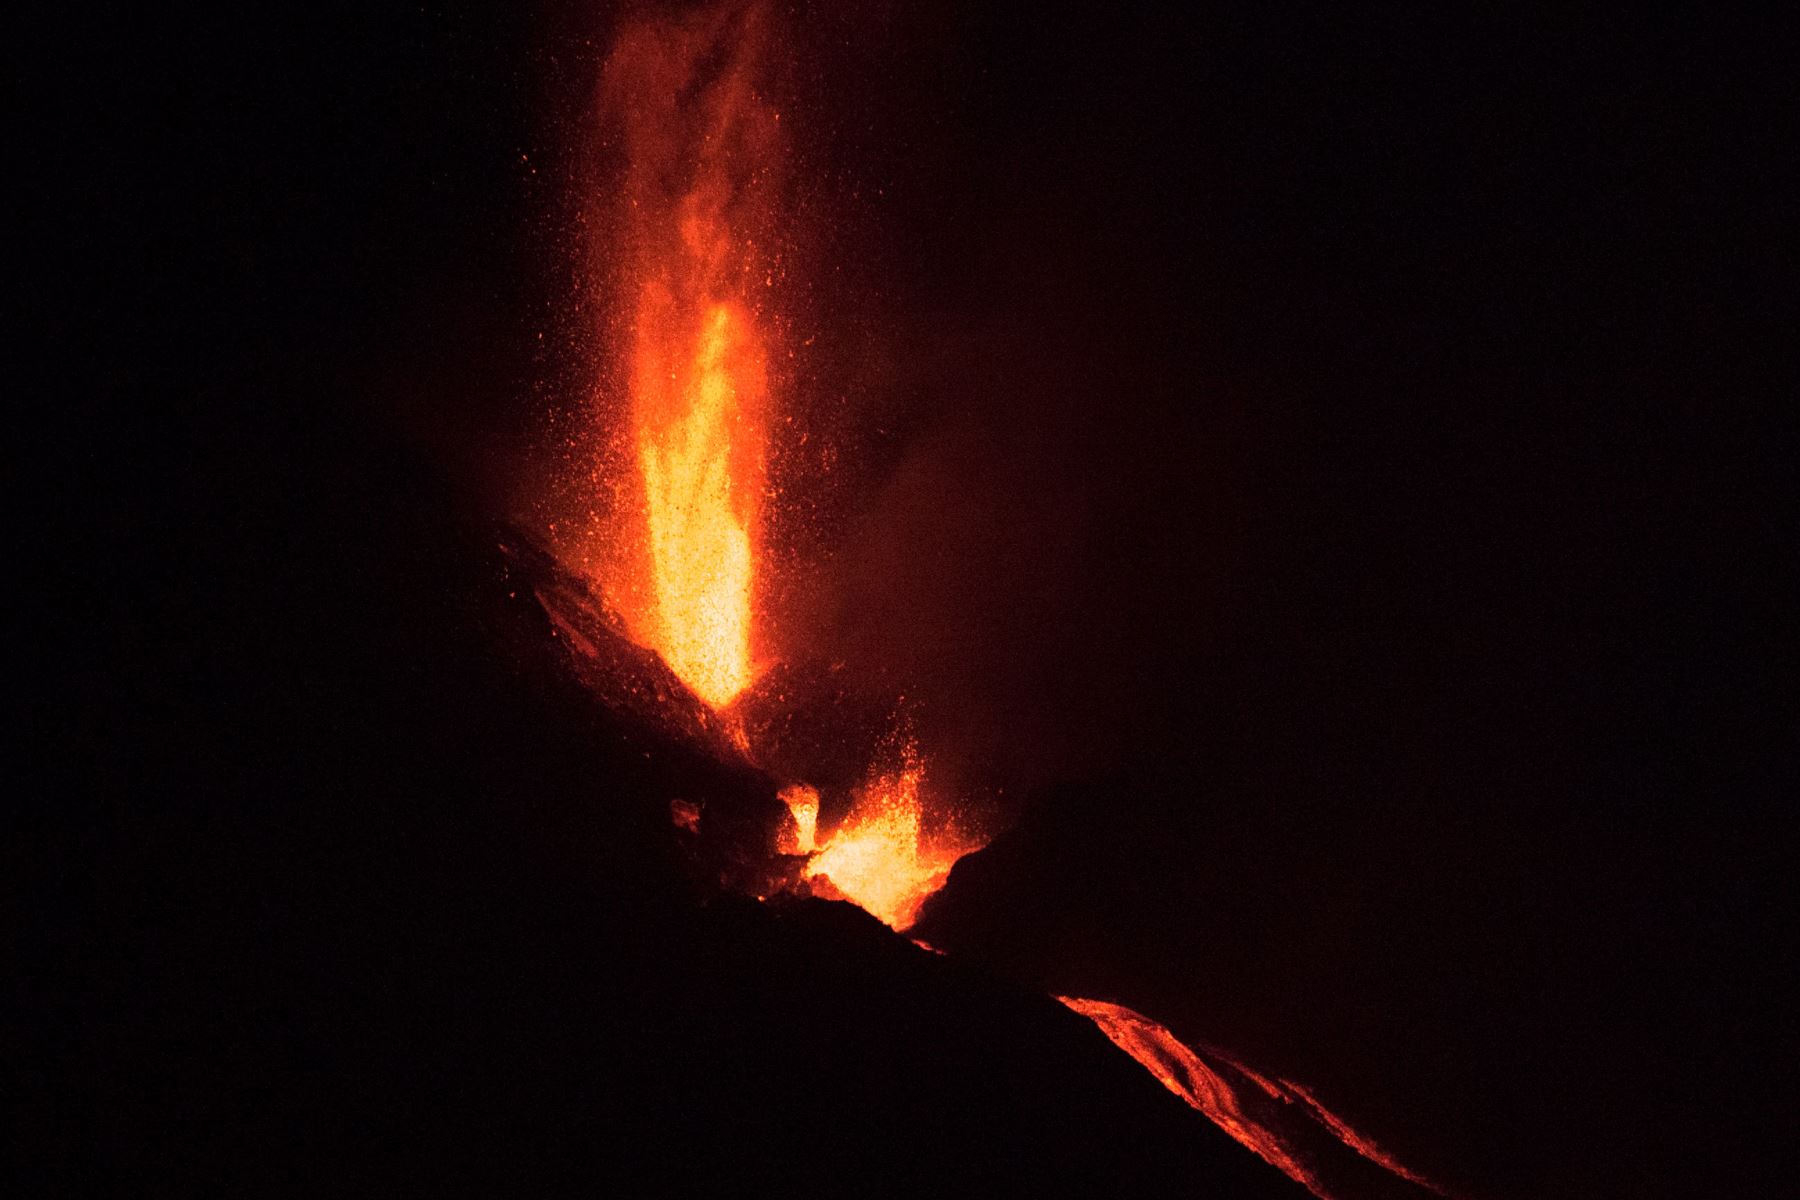 El volcán Cumbre Vieja, fotografiado desde Los Llanos de Aridane, arroja lava, ceniza y humo, en la isla canaria de La Palma.
Foto: AFP